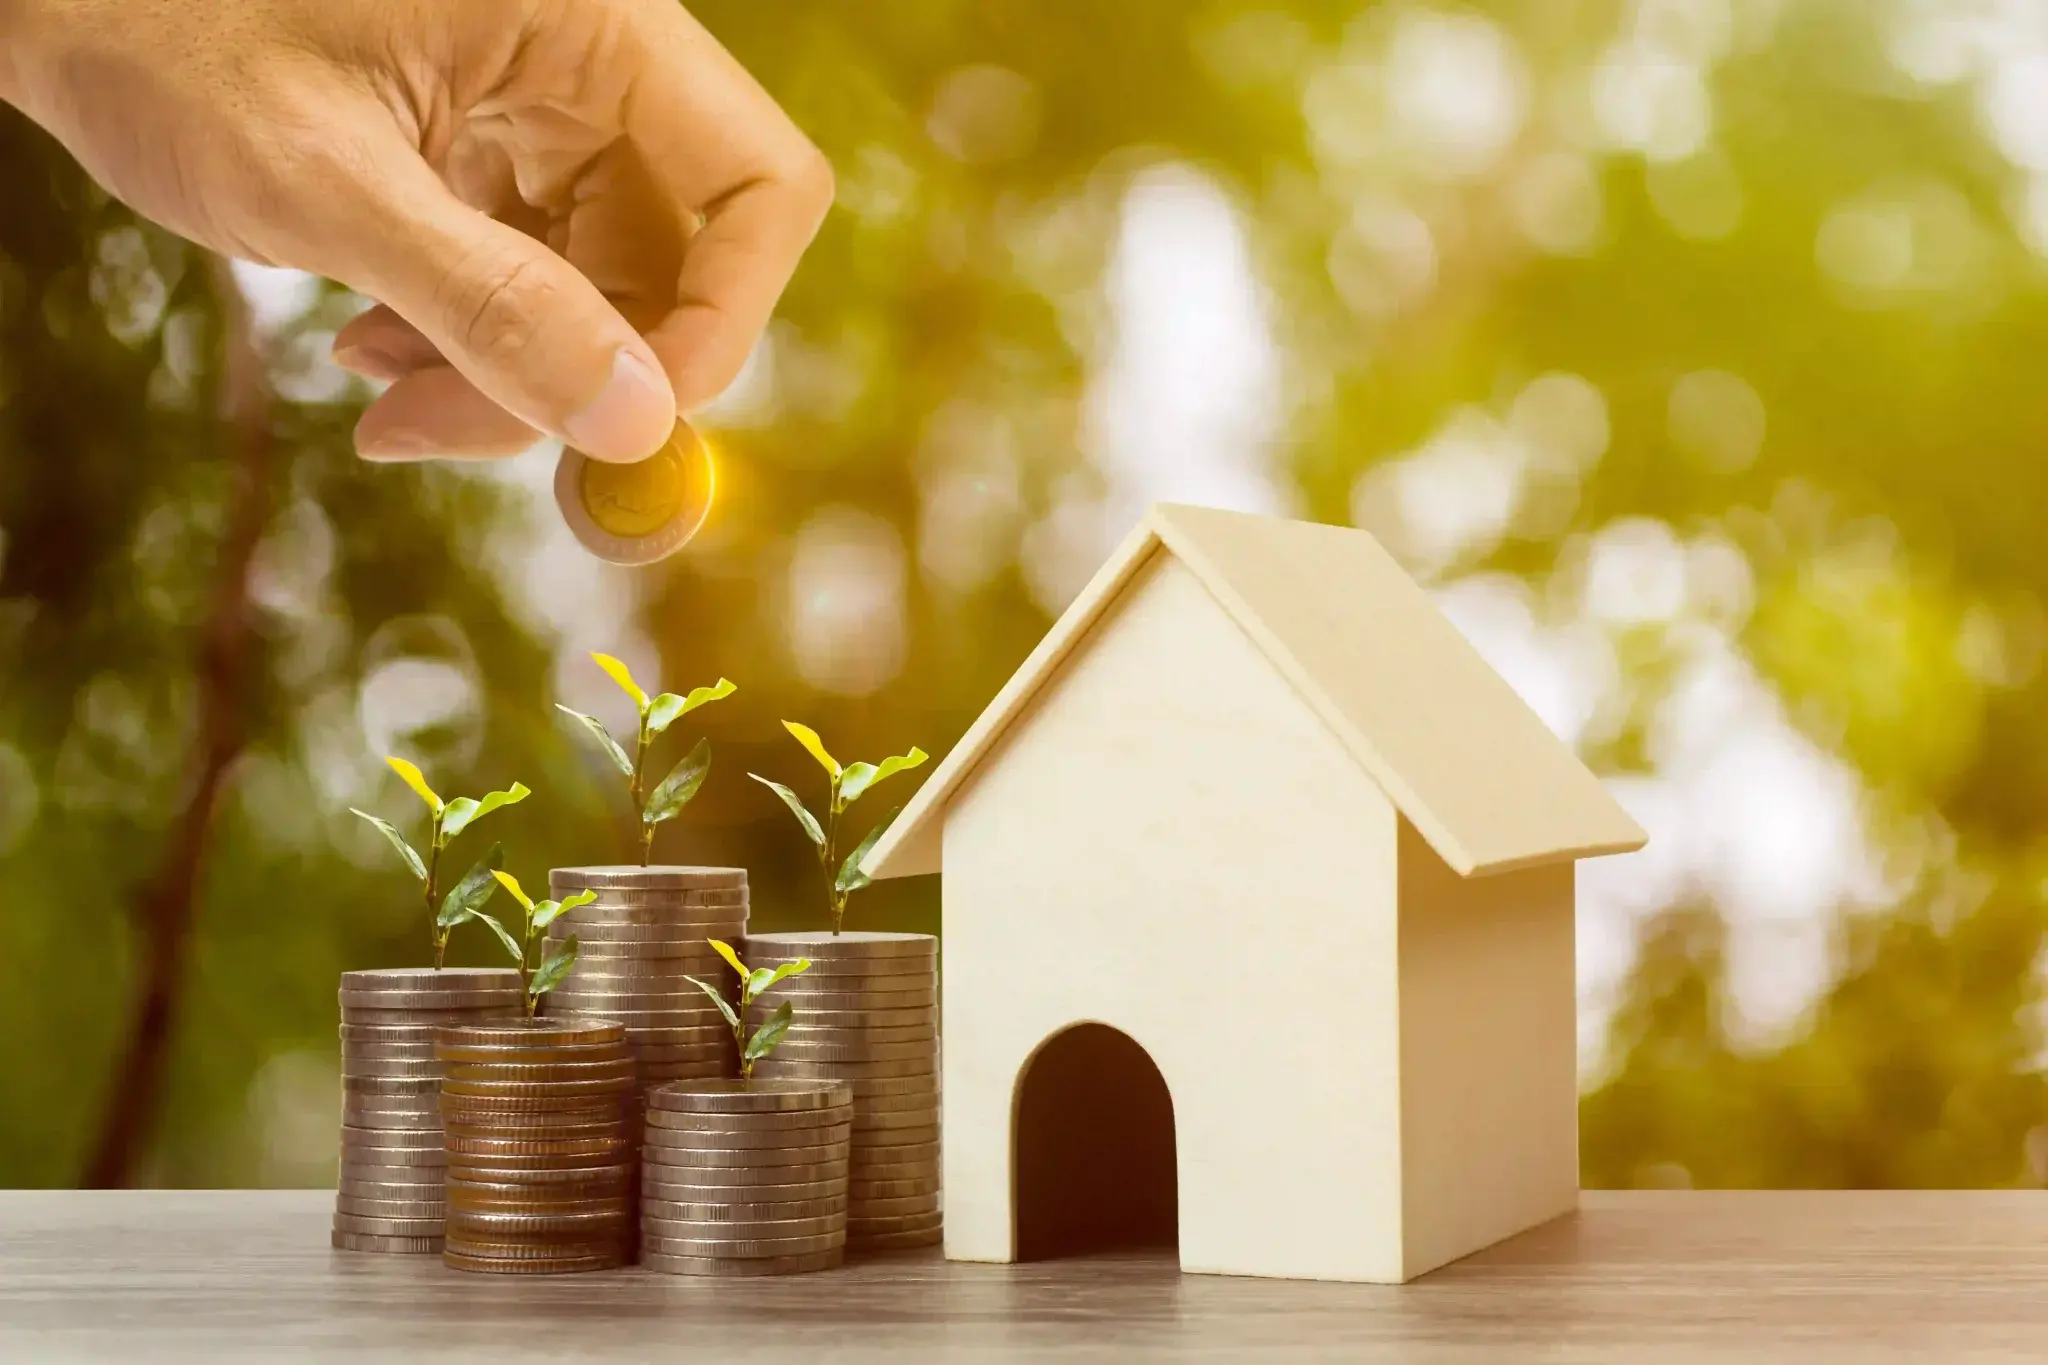 Comprar imóvel para investir: miniatura de casa perto de moedas empilhadas